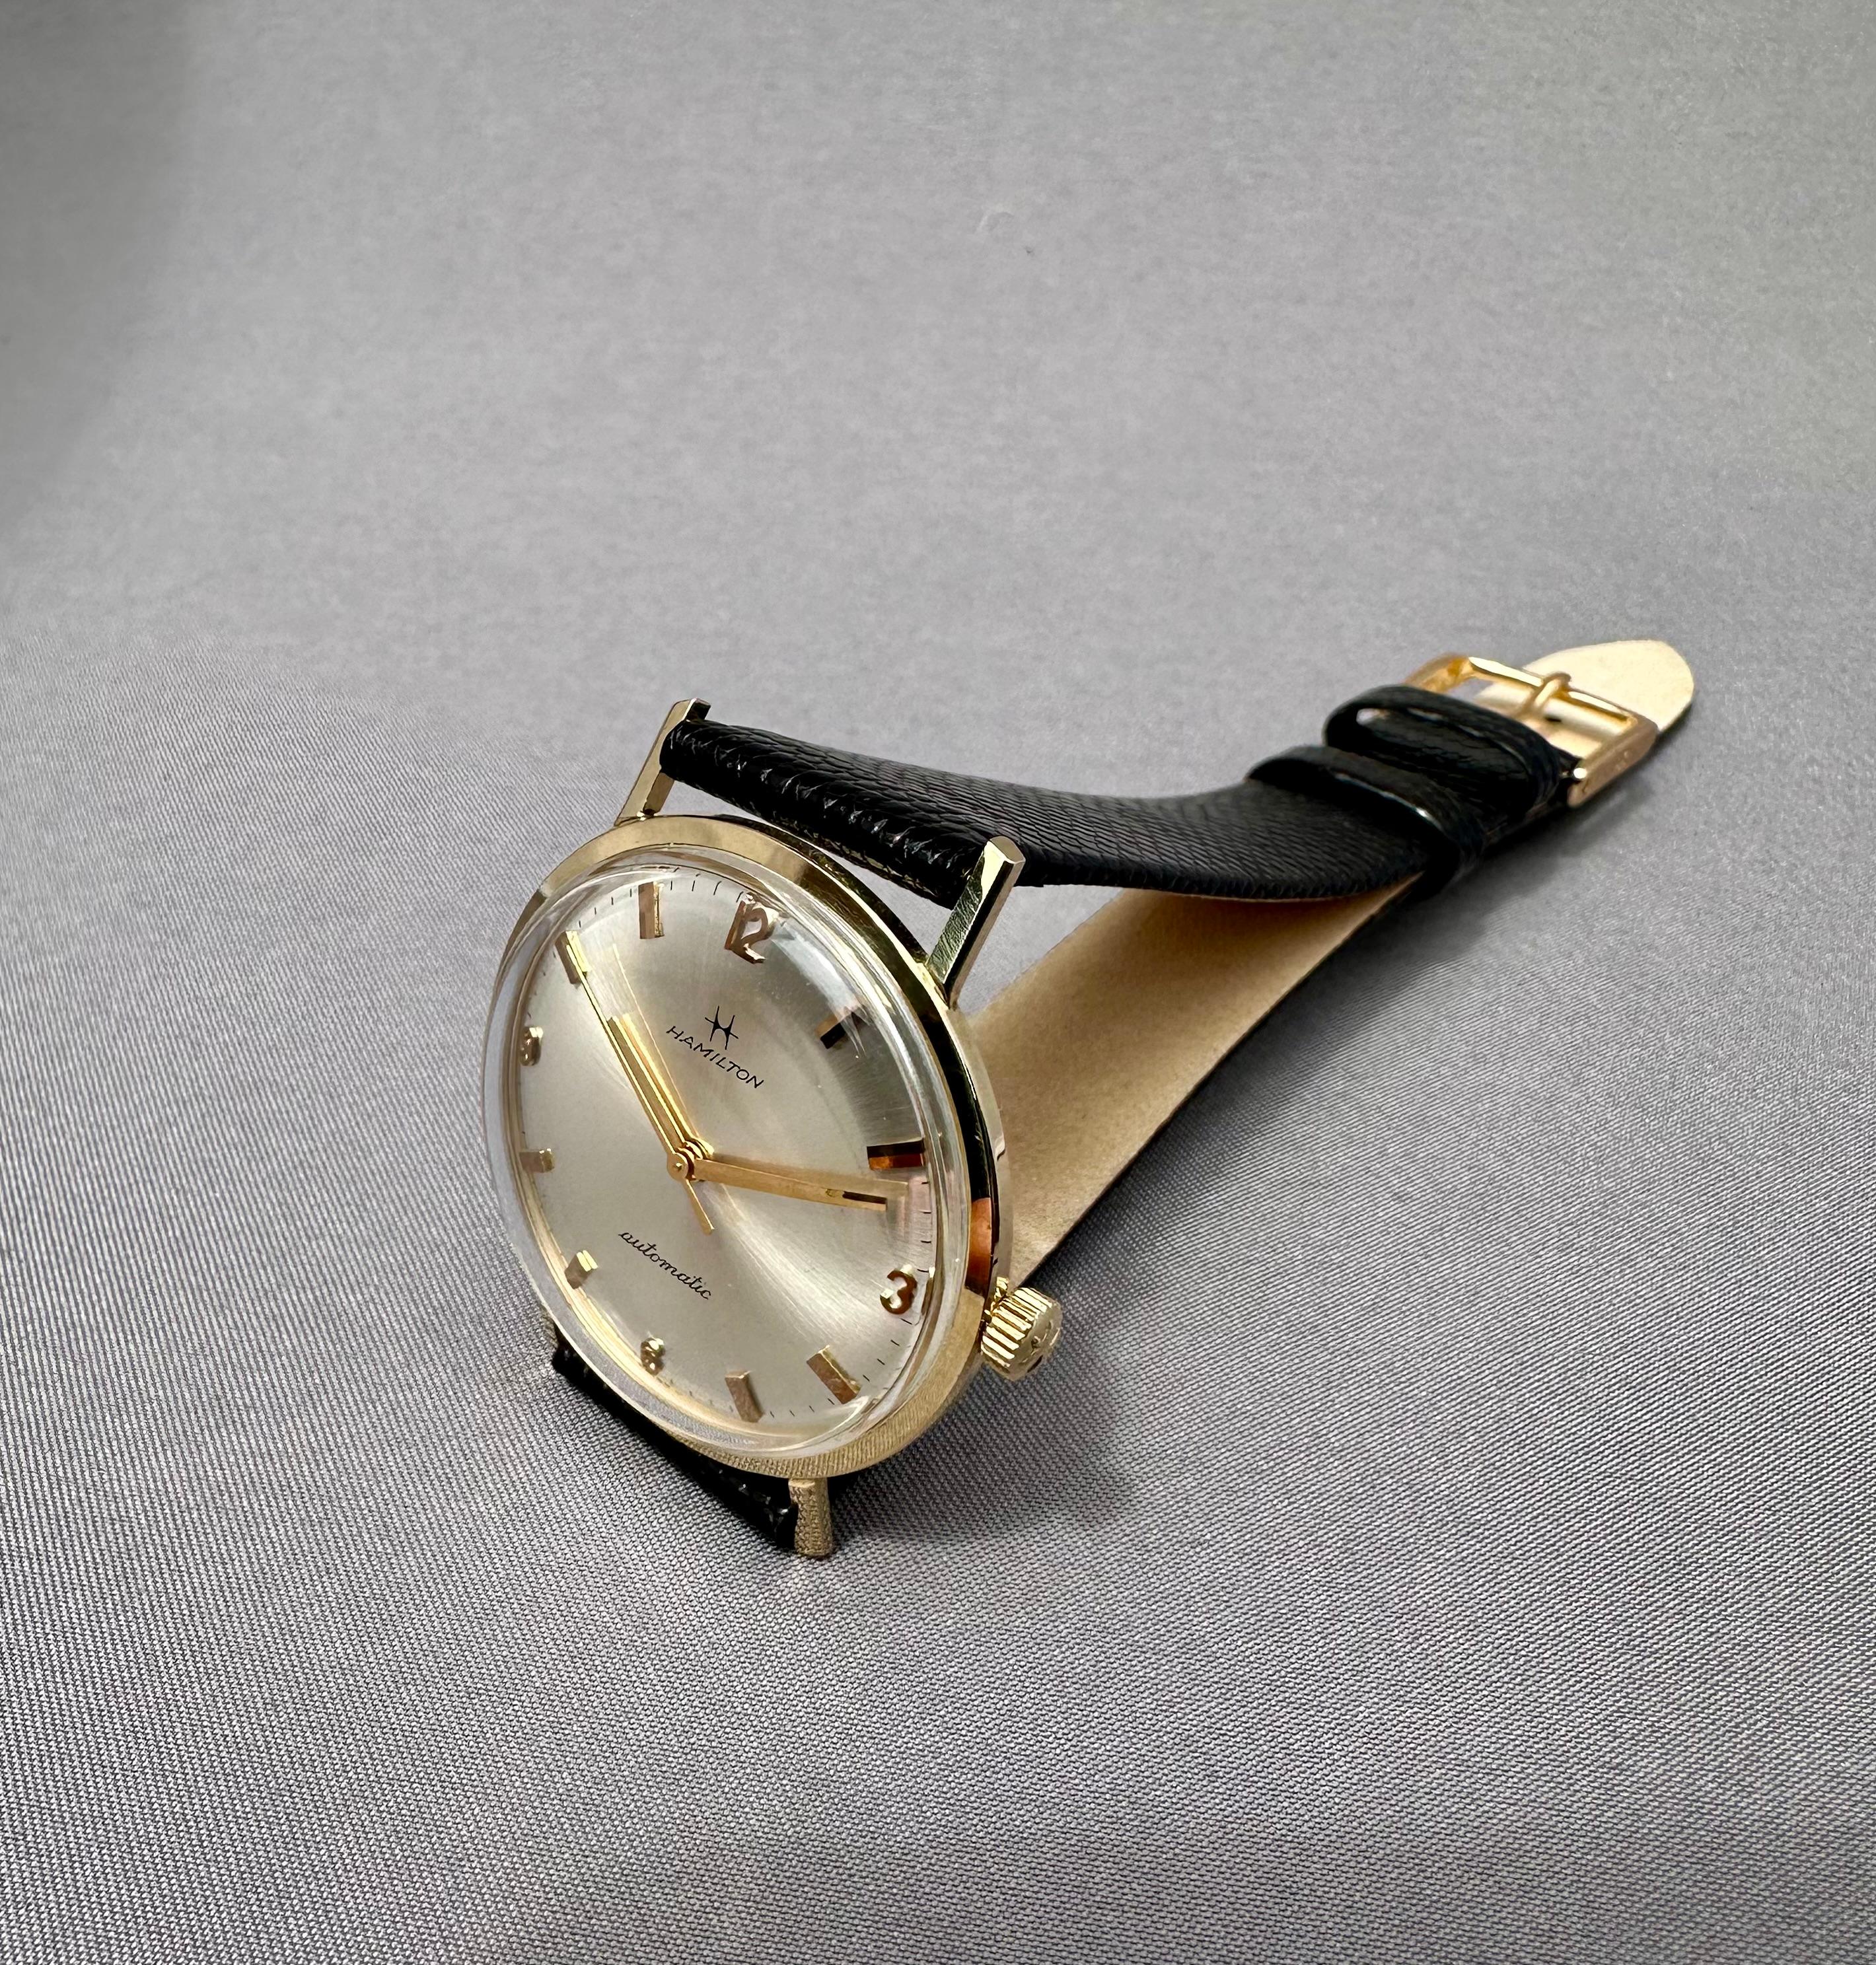 Vintage Hamilton Montre automatique en or massif 14k avec cadran argenté - 1970's

Description / Condit : Toutes les montres ont été examinées et révisées par des professionnels avant d'être mises en vente. 

Fabricant : Hamilton

Modèle : Hamilton